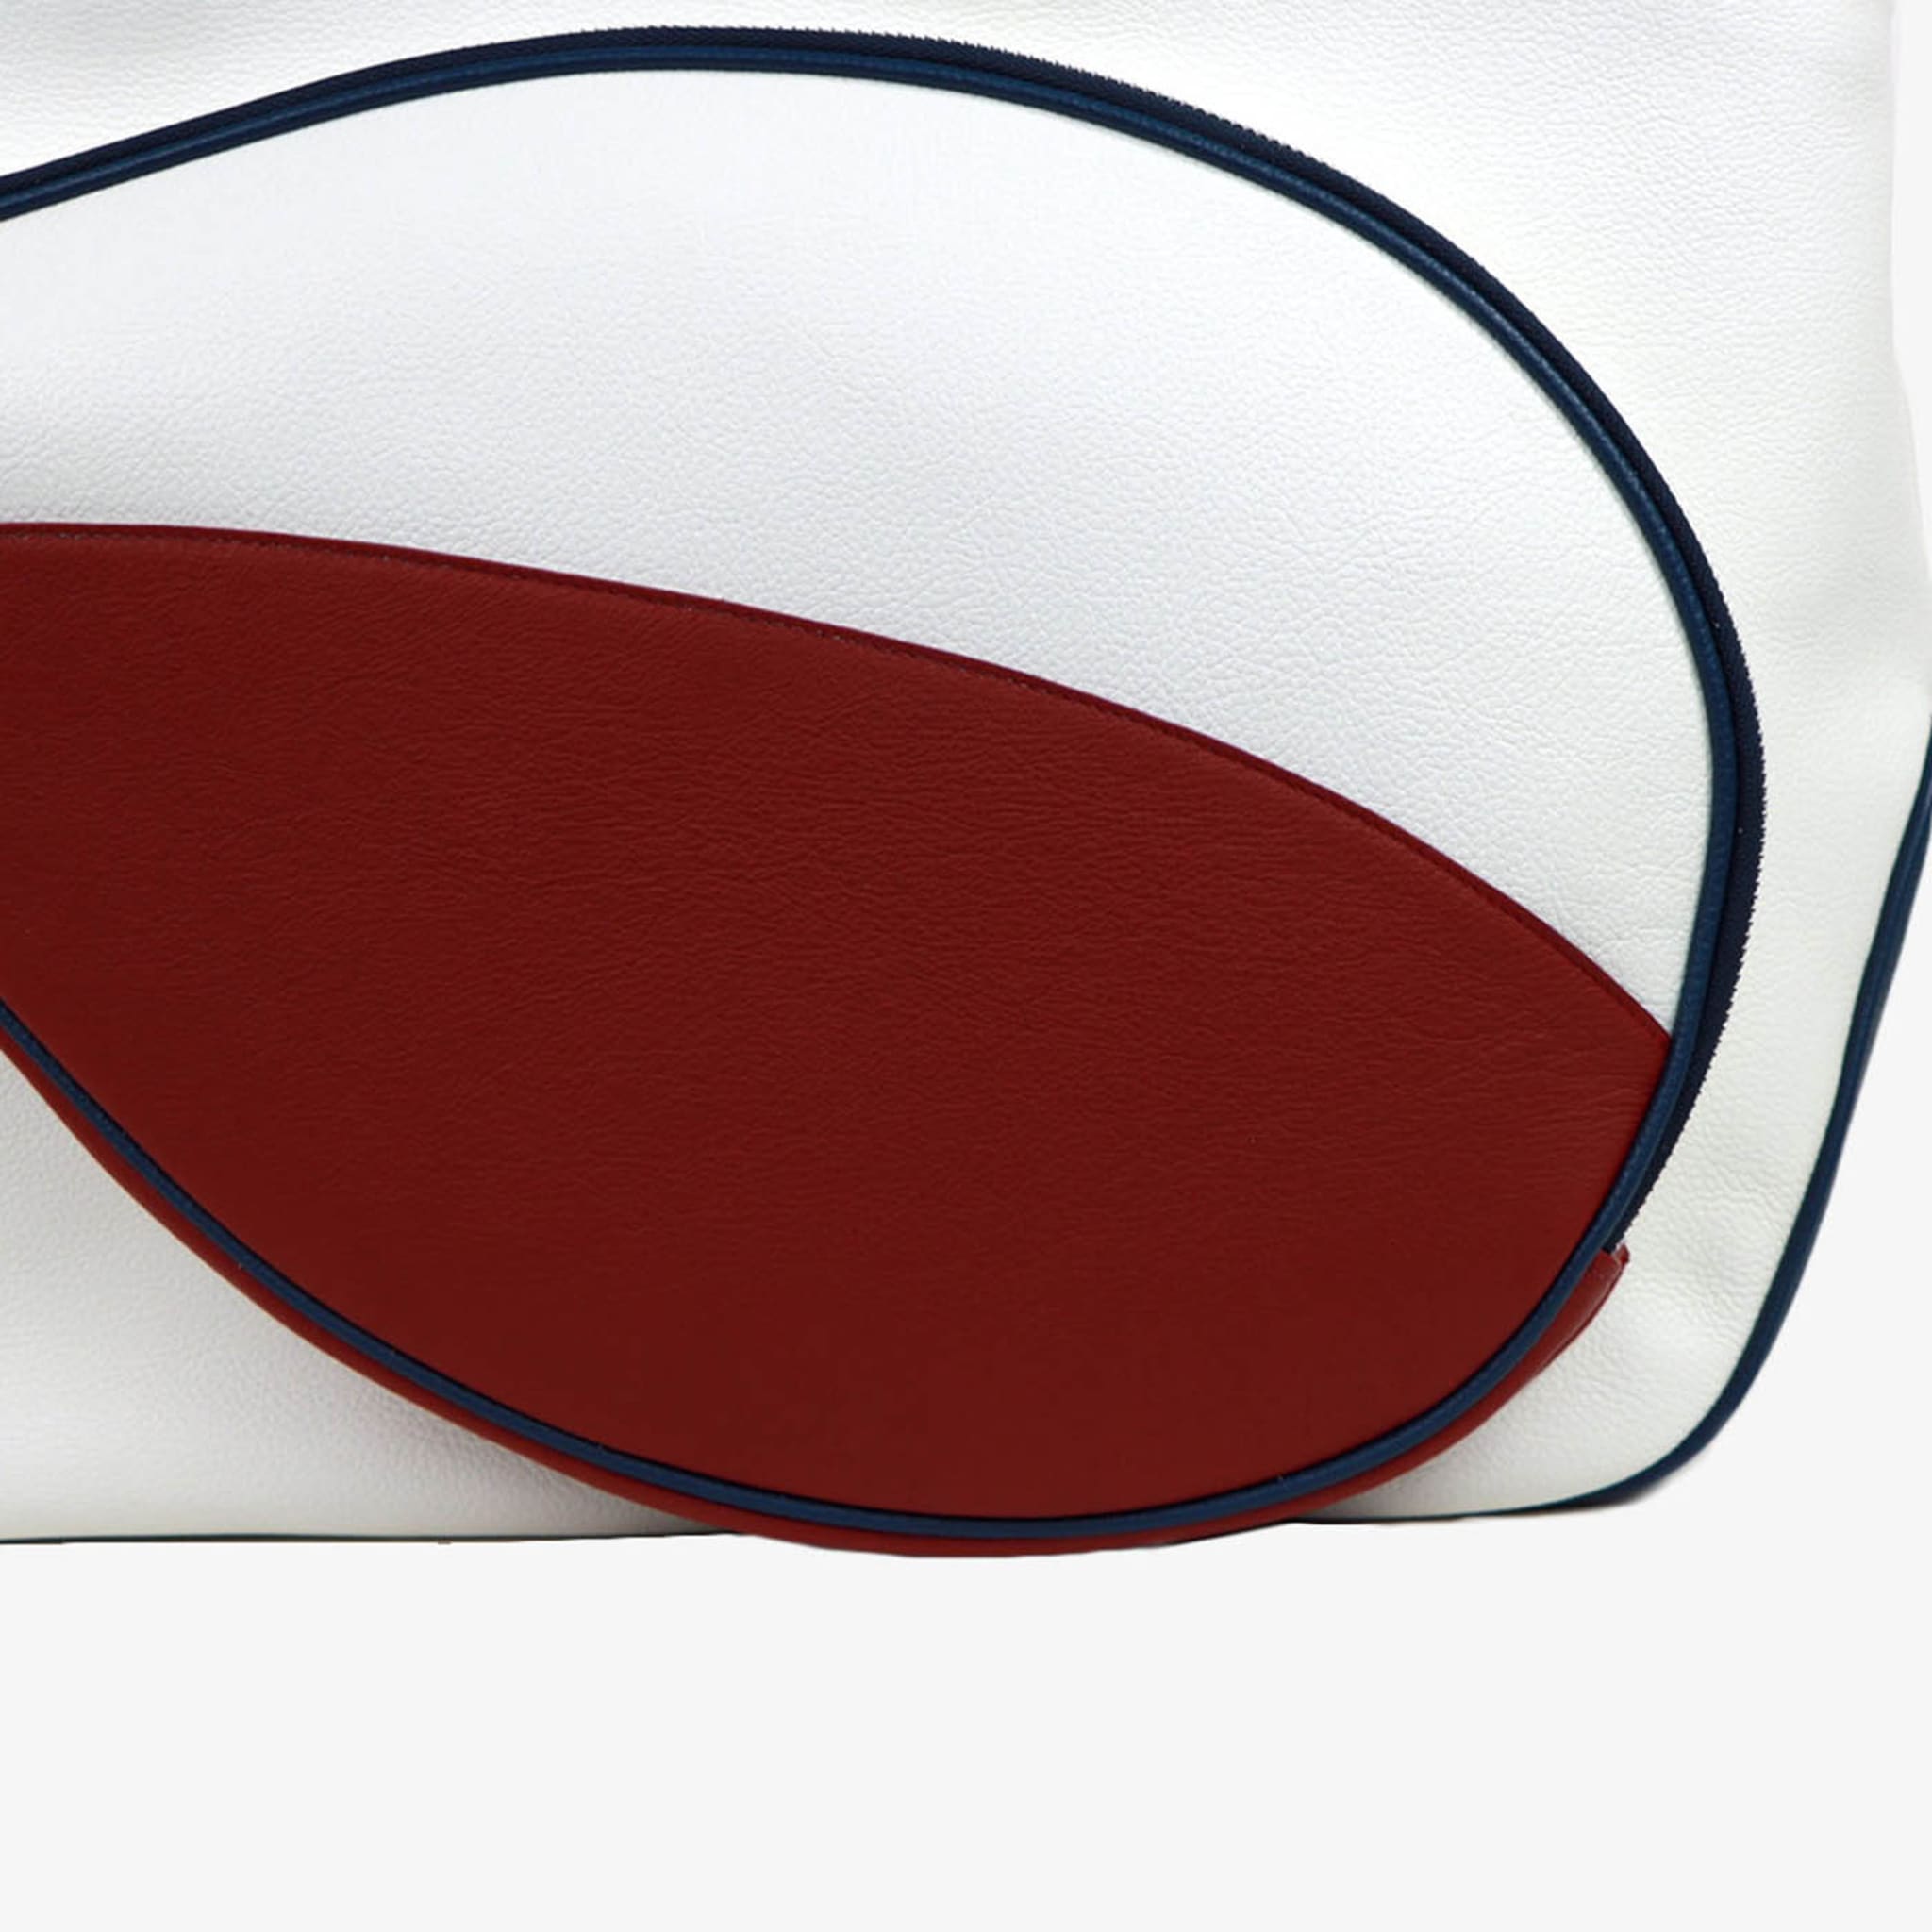 Sac de sport blanc/rouge/bleu avec pochette en forme de raquette de tennis - Vue alternative 1